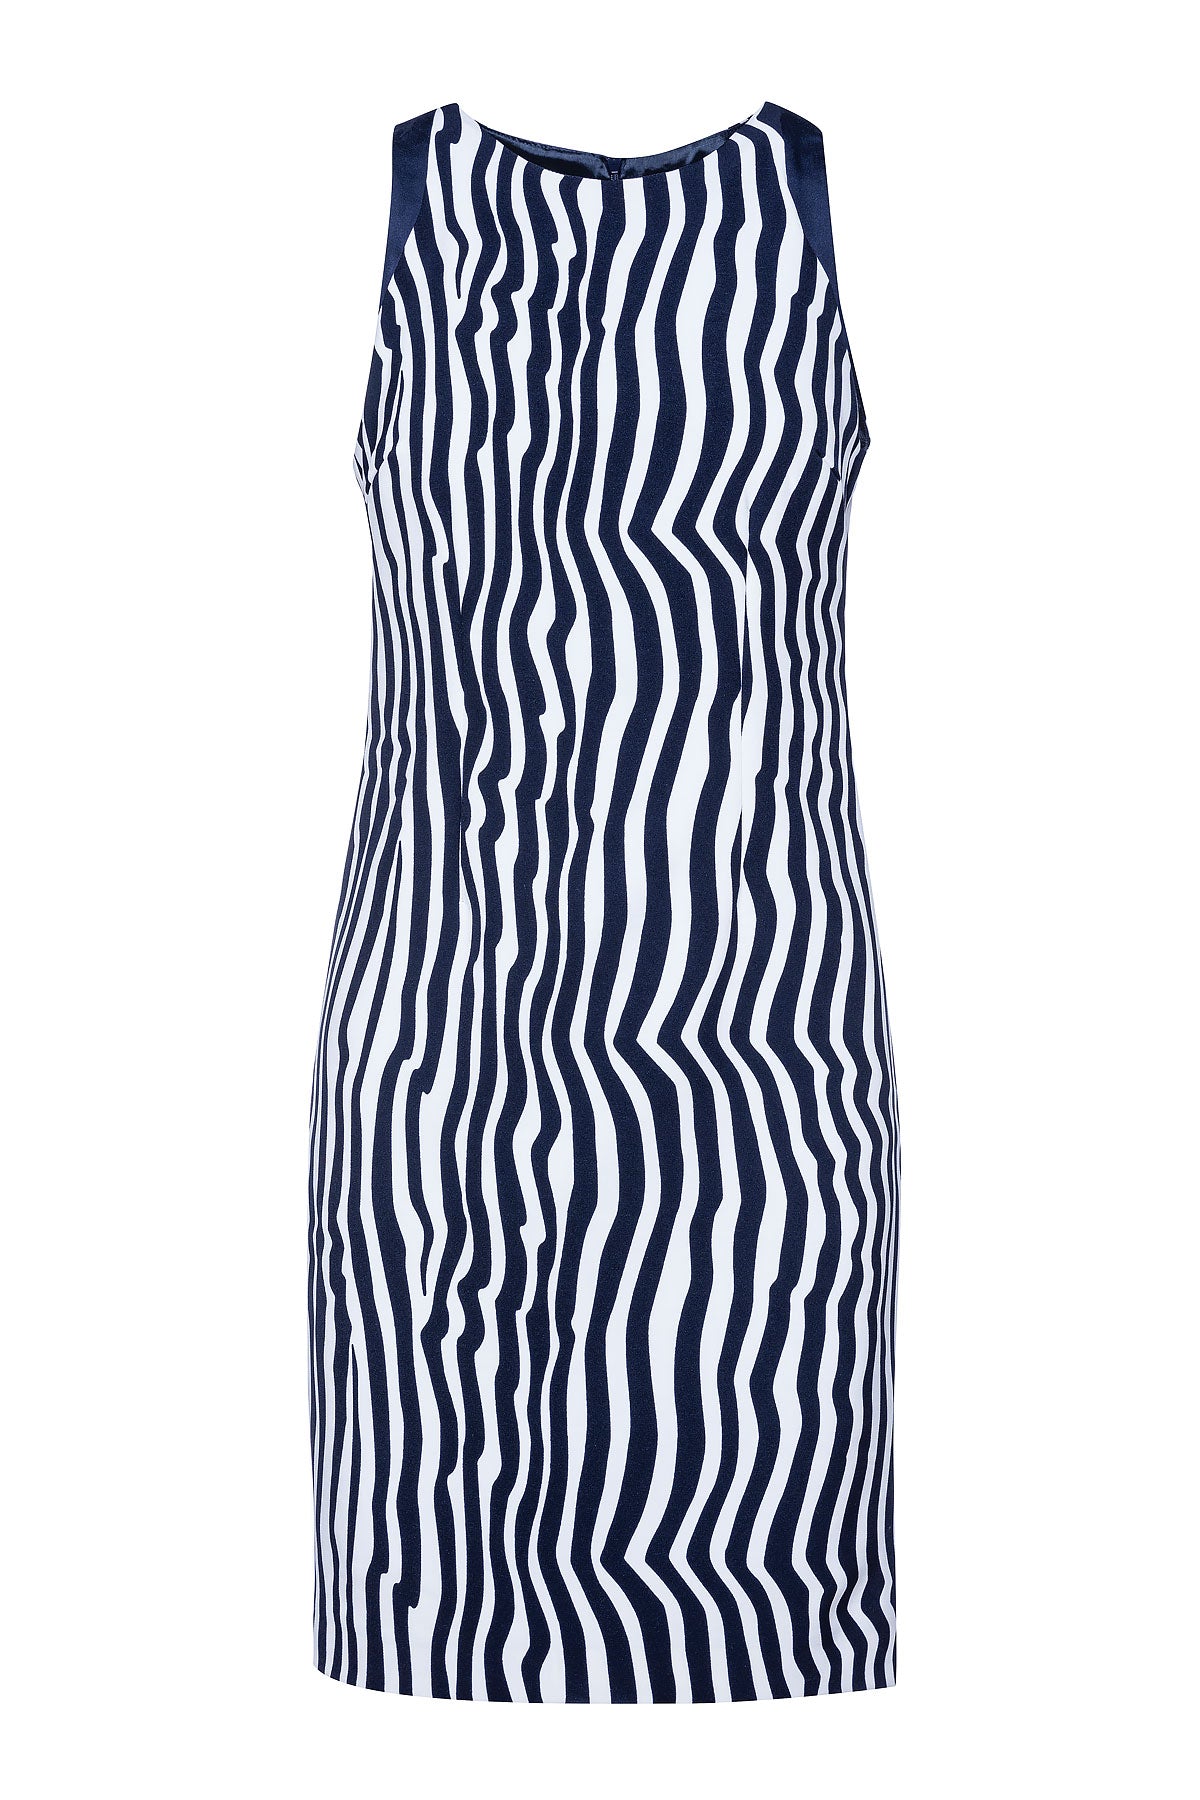 Women’s Blue Sleeveless Zebra Print Dress Small Conquista